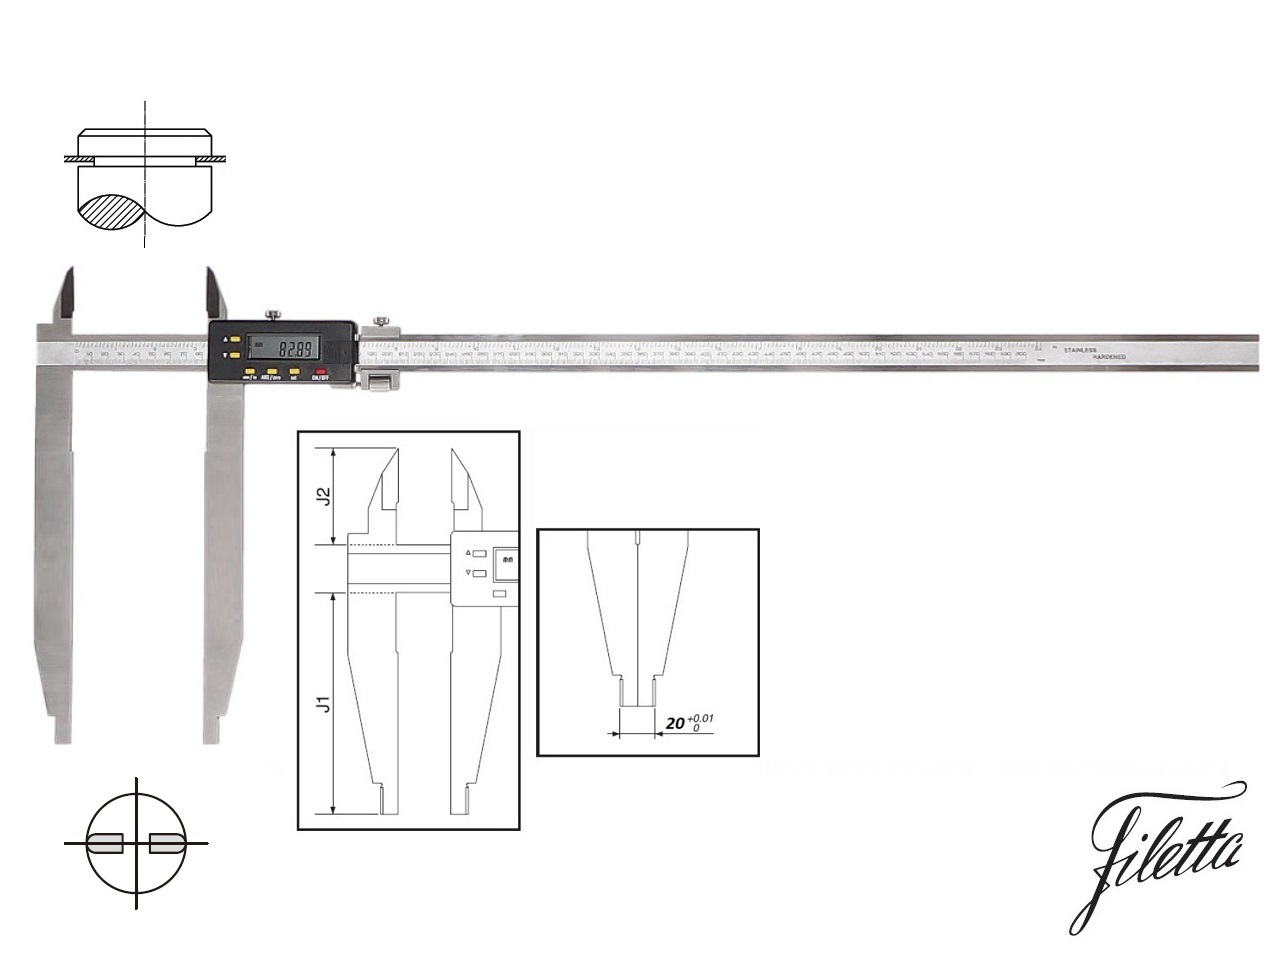 Digitální posuvné měřítko Filetta 0-600/200 mm s měřicími nožíky pro vnější měření